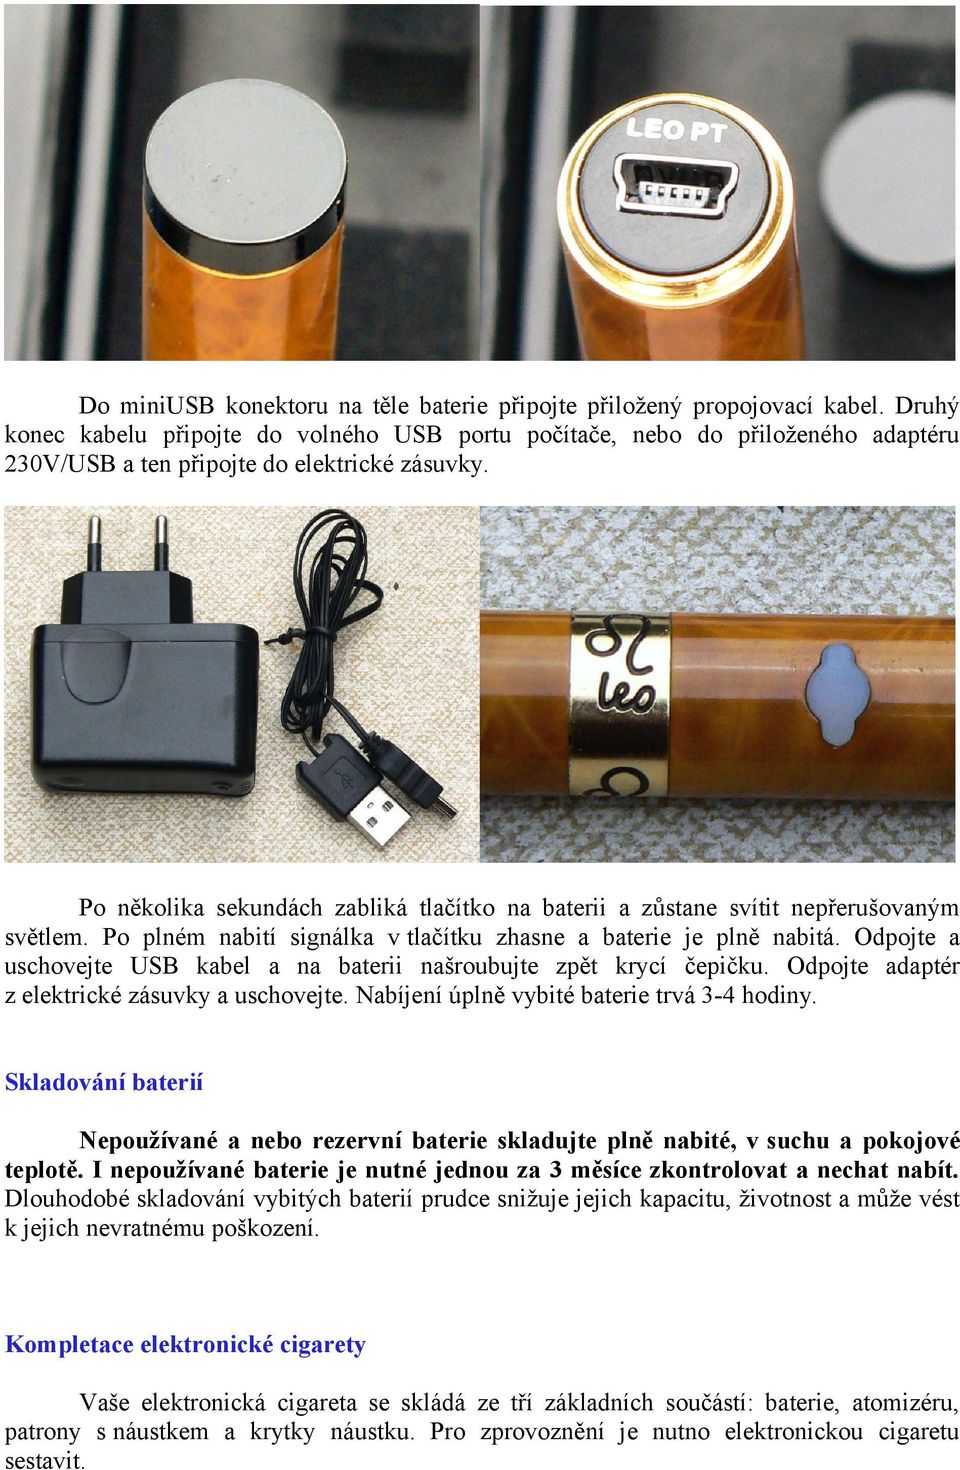 Blahopřejeme k nákupu elektronické cigarety Boge LEO - PDF Stažení zdarma